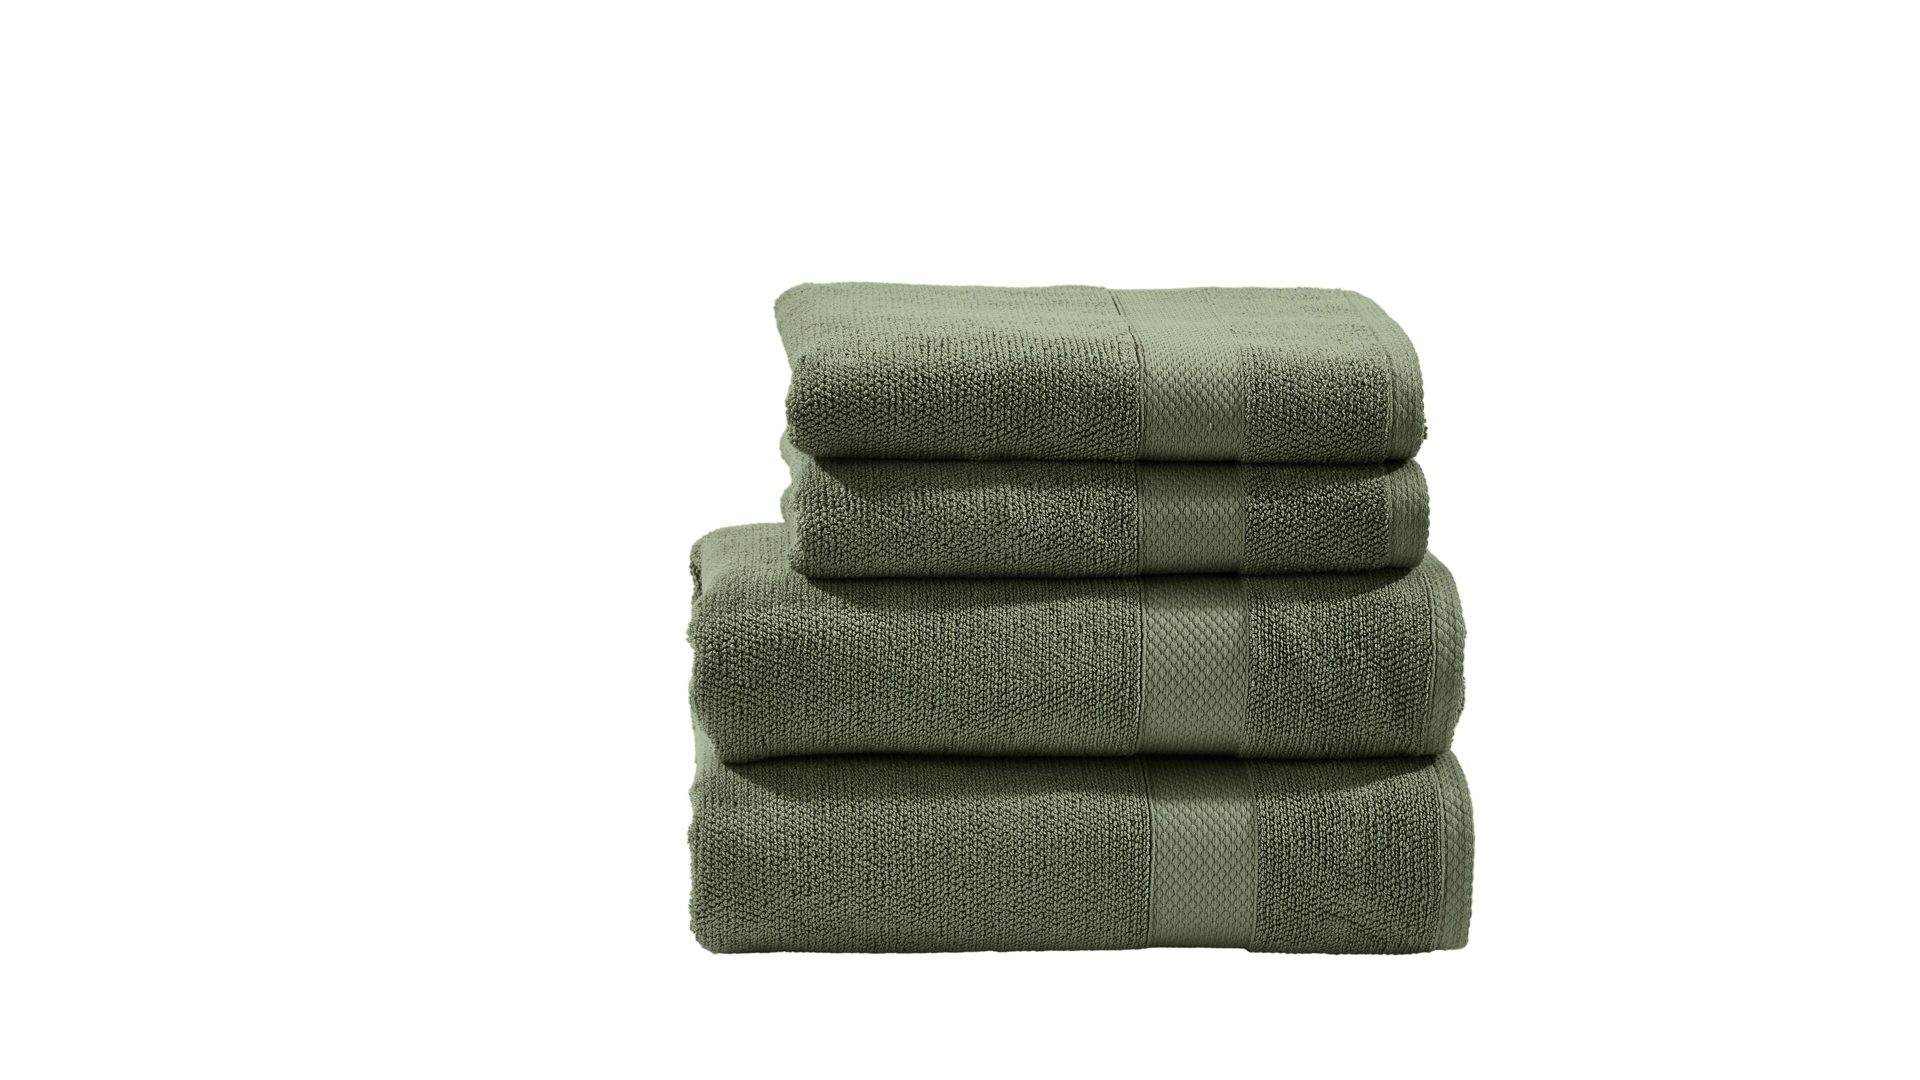 Handtuch-Set Done by karabel home company aus Stoff in Grün done Handtuch-Set Deluxe für Ihre Heimtextilien khakifarbene Baumwolle – vierteilig